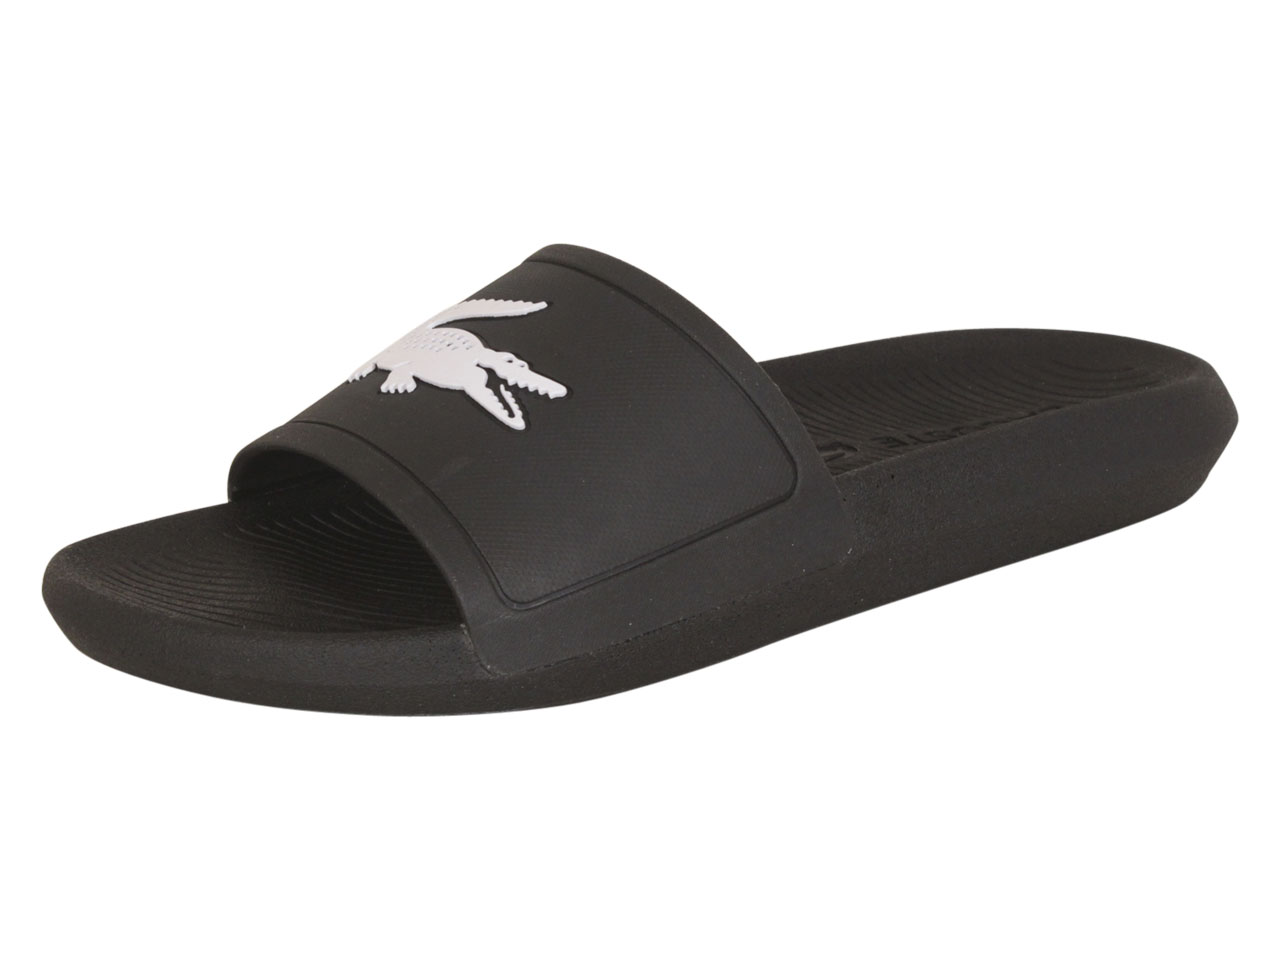 Lacoste Men's Croco-Slide-119 Black/White Slides Sandals Shoes Sz: 9 |  JoyLot.com